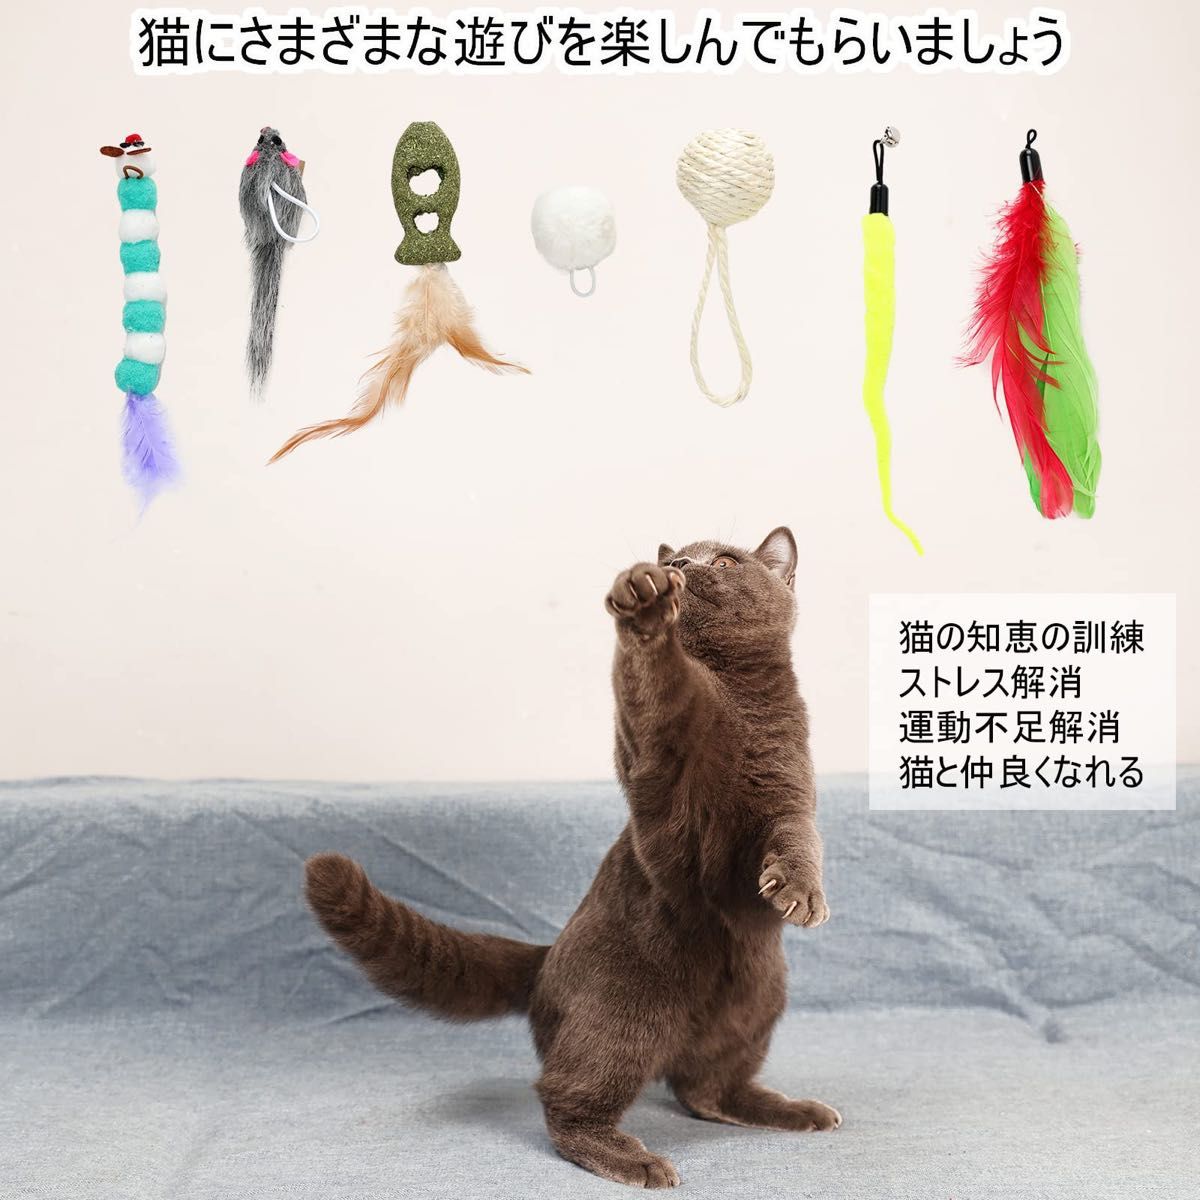 猫じゃらし ハンギングドア猫用おもちゃ9個セット 遊び方 鳥羽猫スティック猫マウスおもちゃと自動交換可能なおもちゃ 